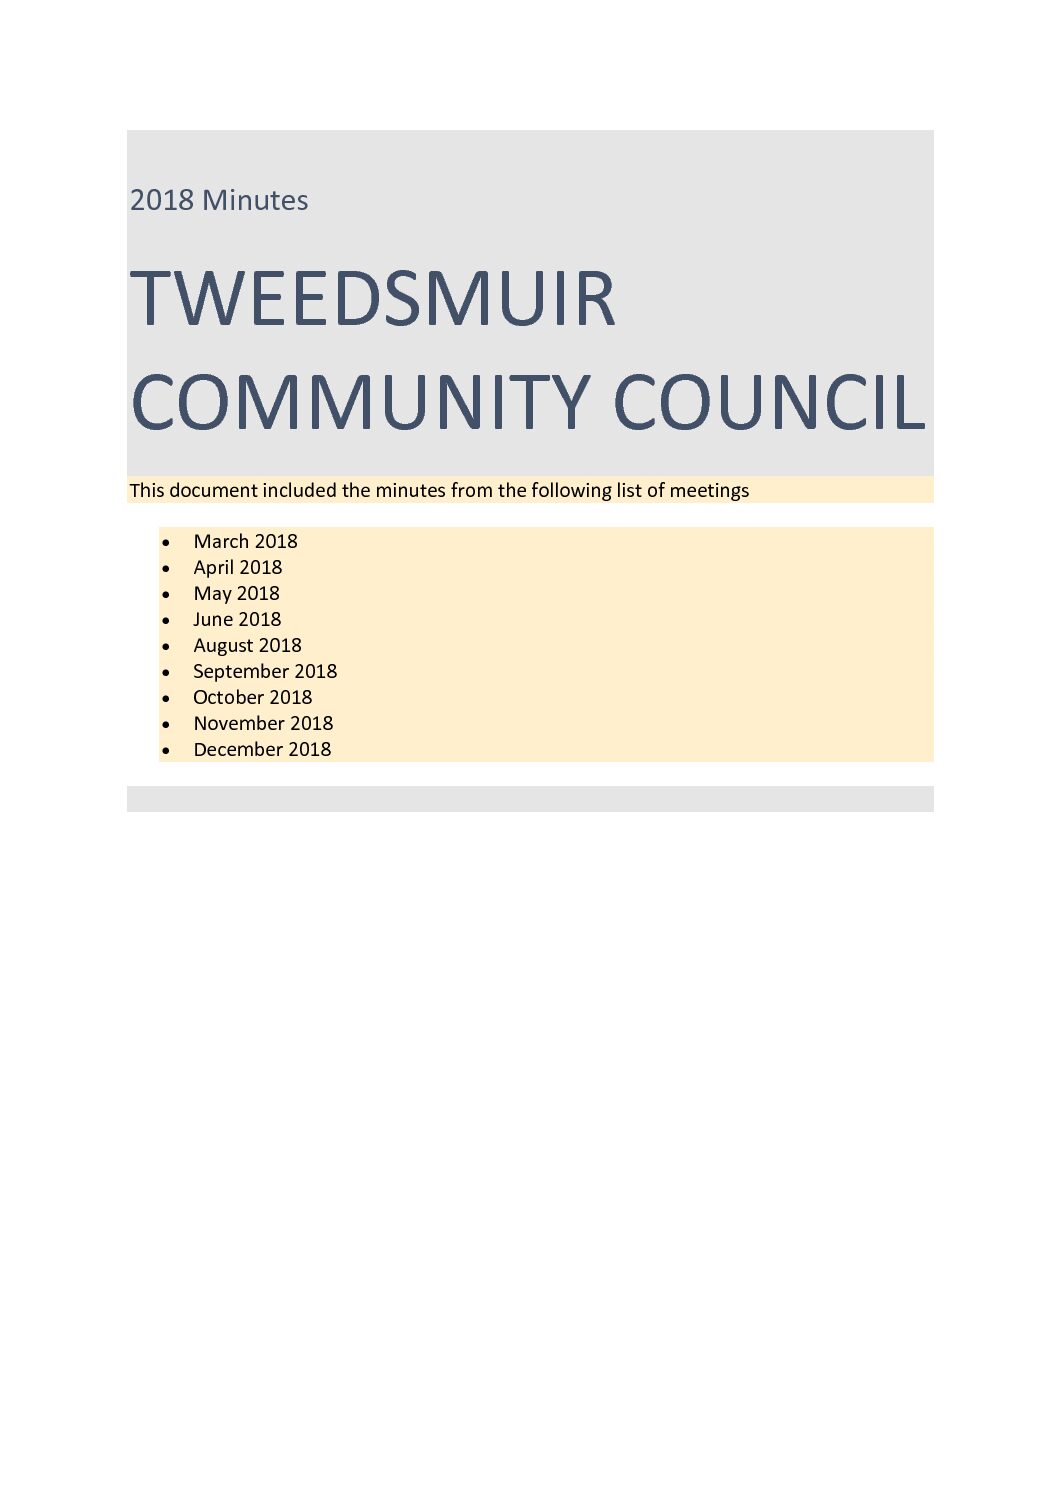 Tweedsmuir Community Council